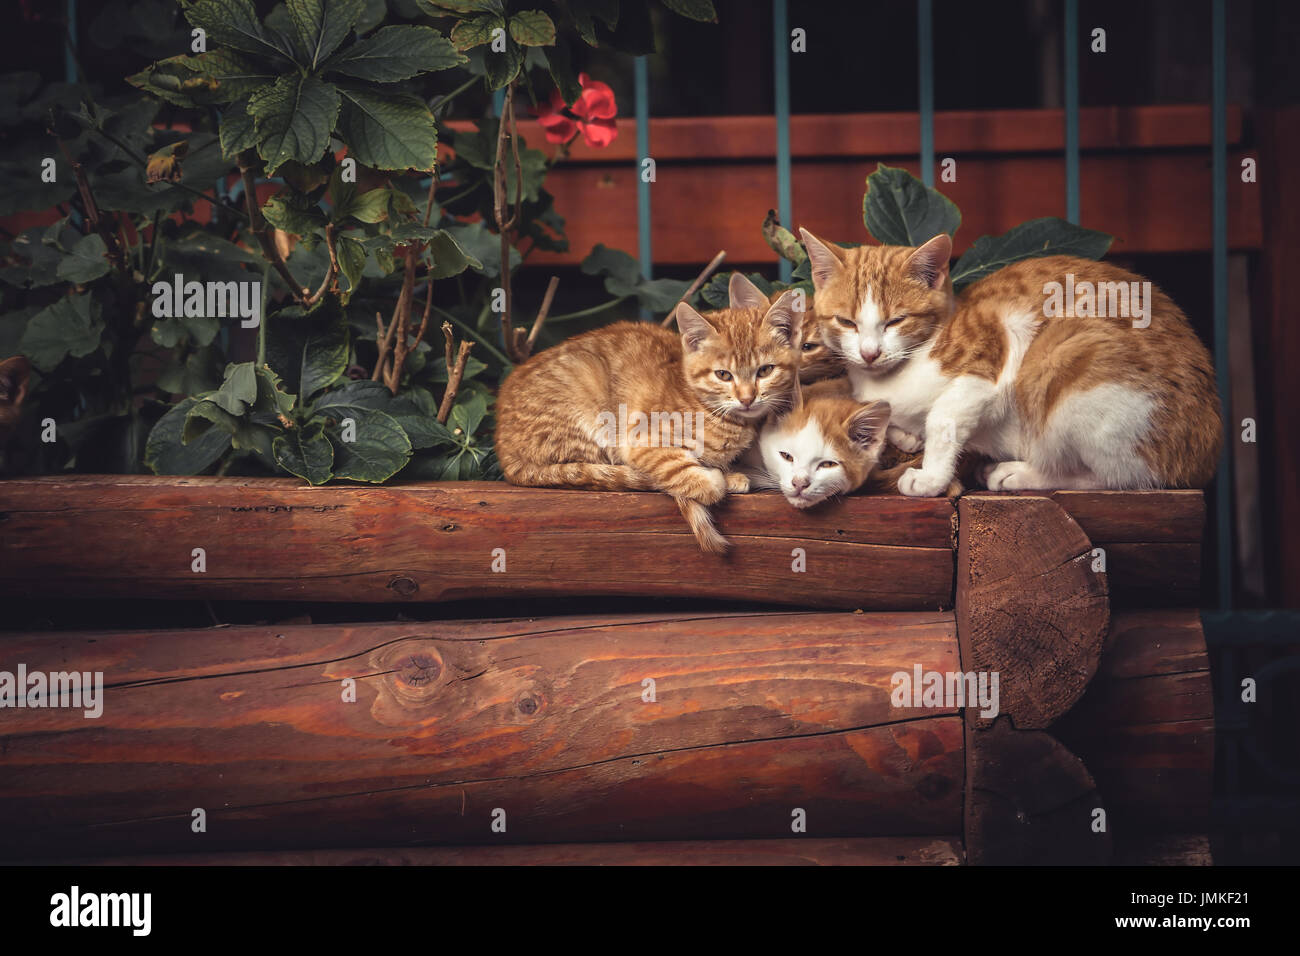 Carino gatti rossi famiglia insieme con il gattino in appoggio su tronchi di legno nelle zone rurali del paese di campagna nel vintage stile rustico Foto Stock